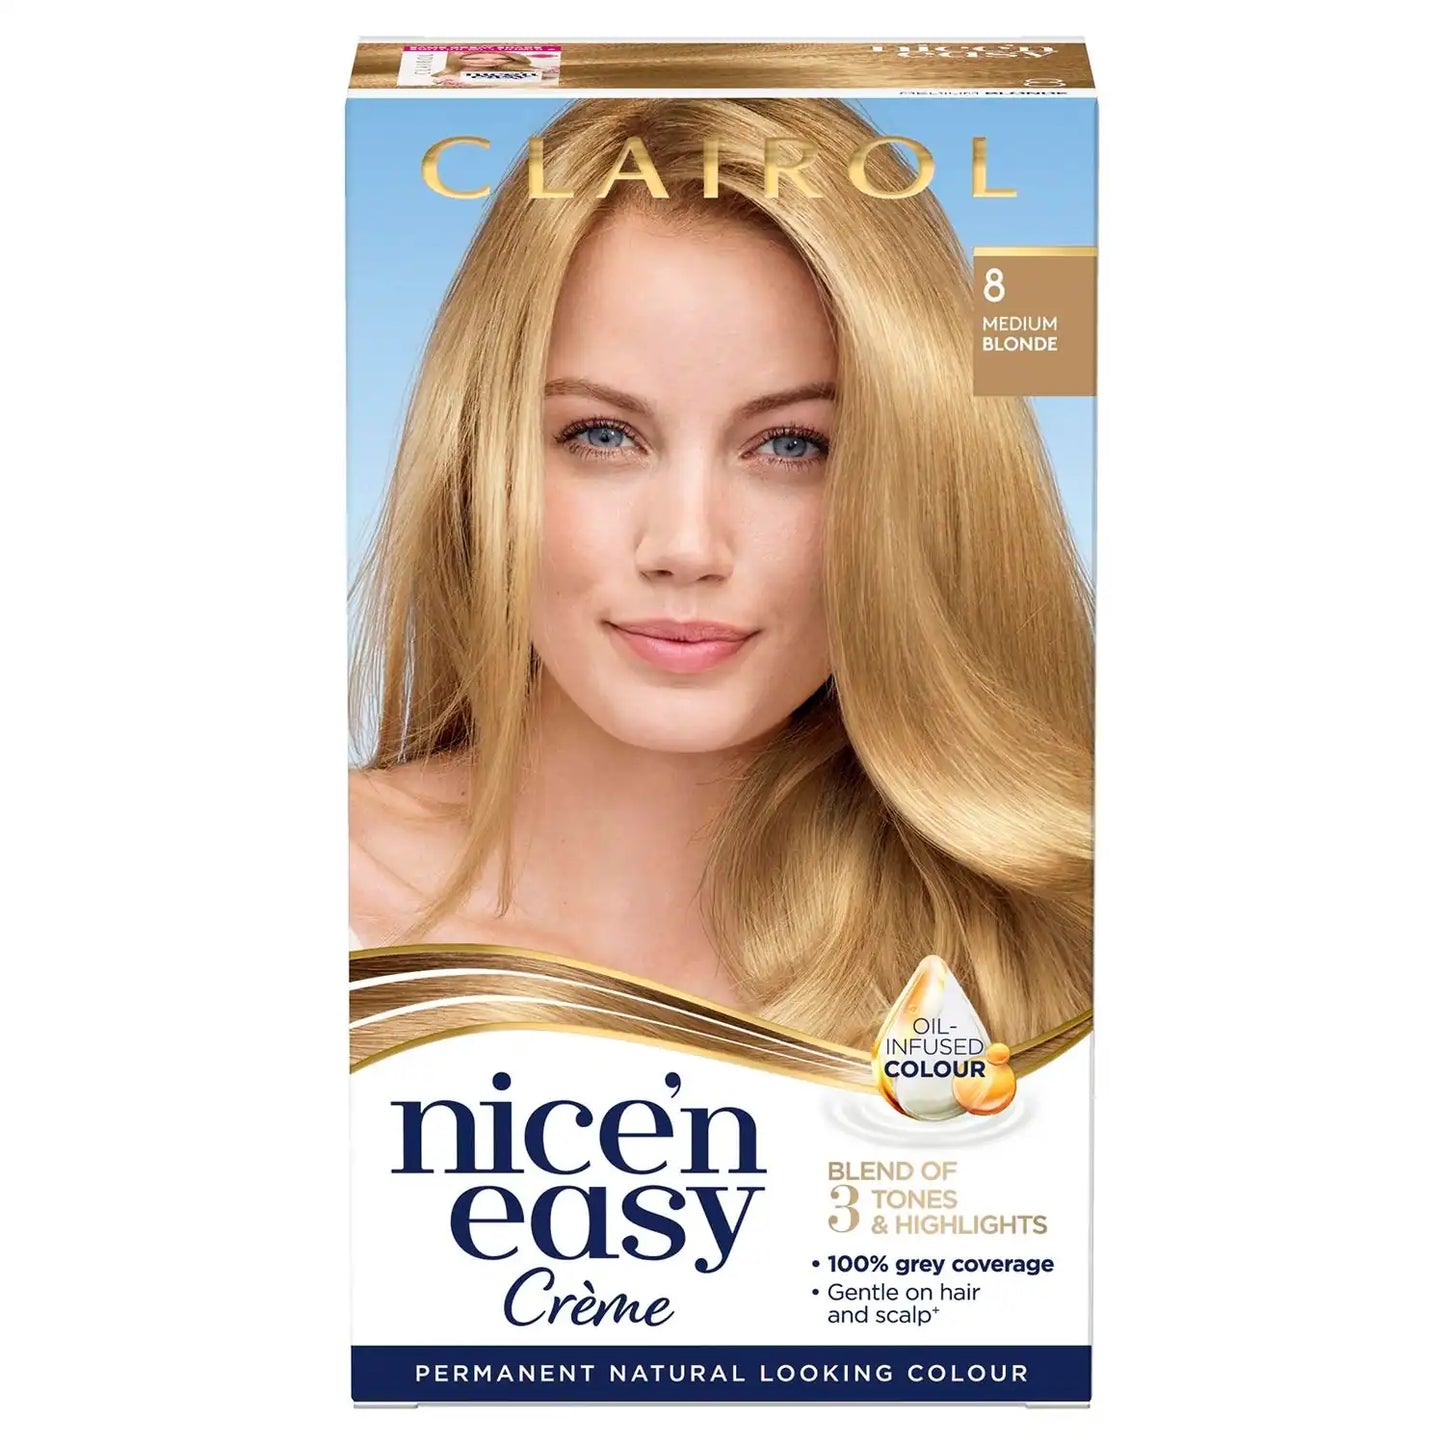 Clairol Nice’n Easy Crème, Natural Looking Permanent Hair Dye